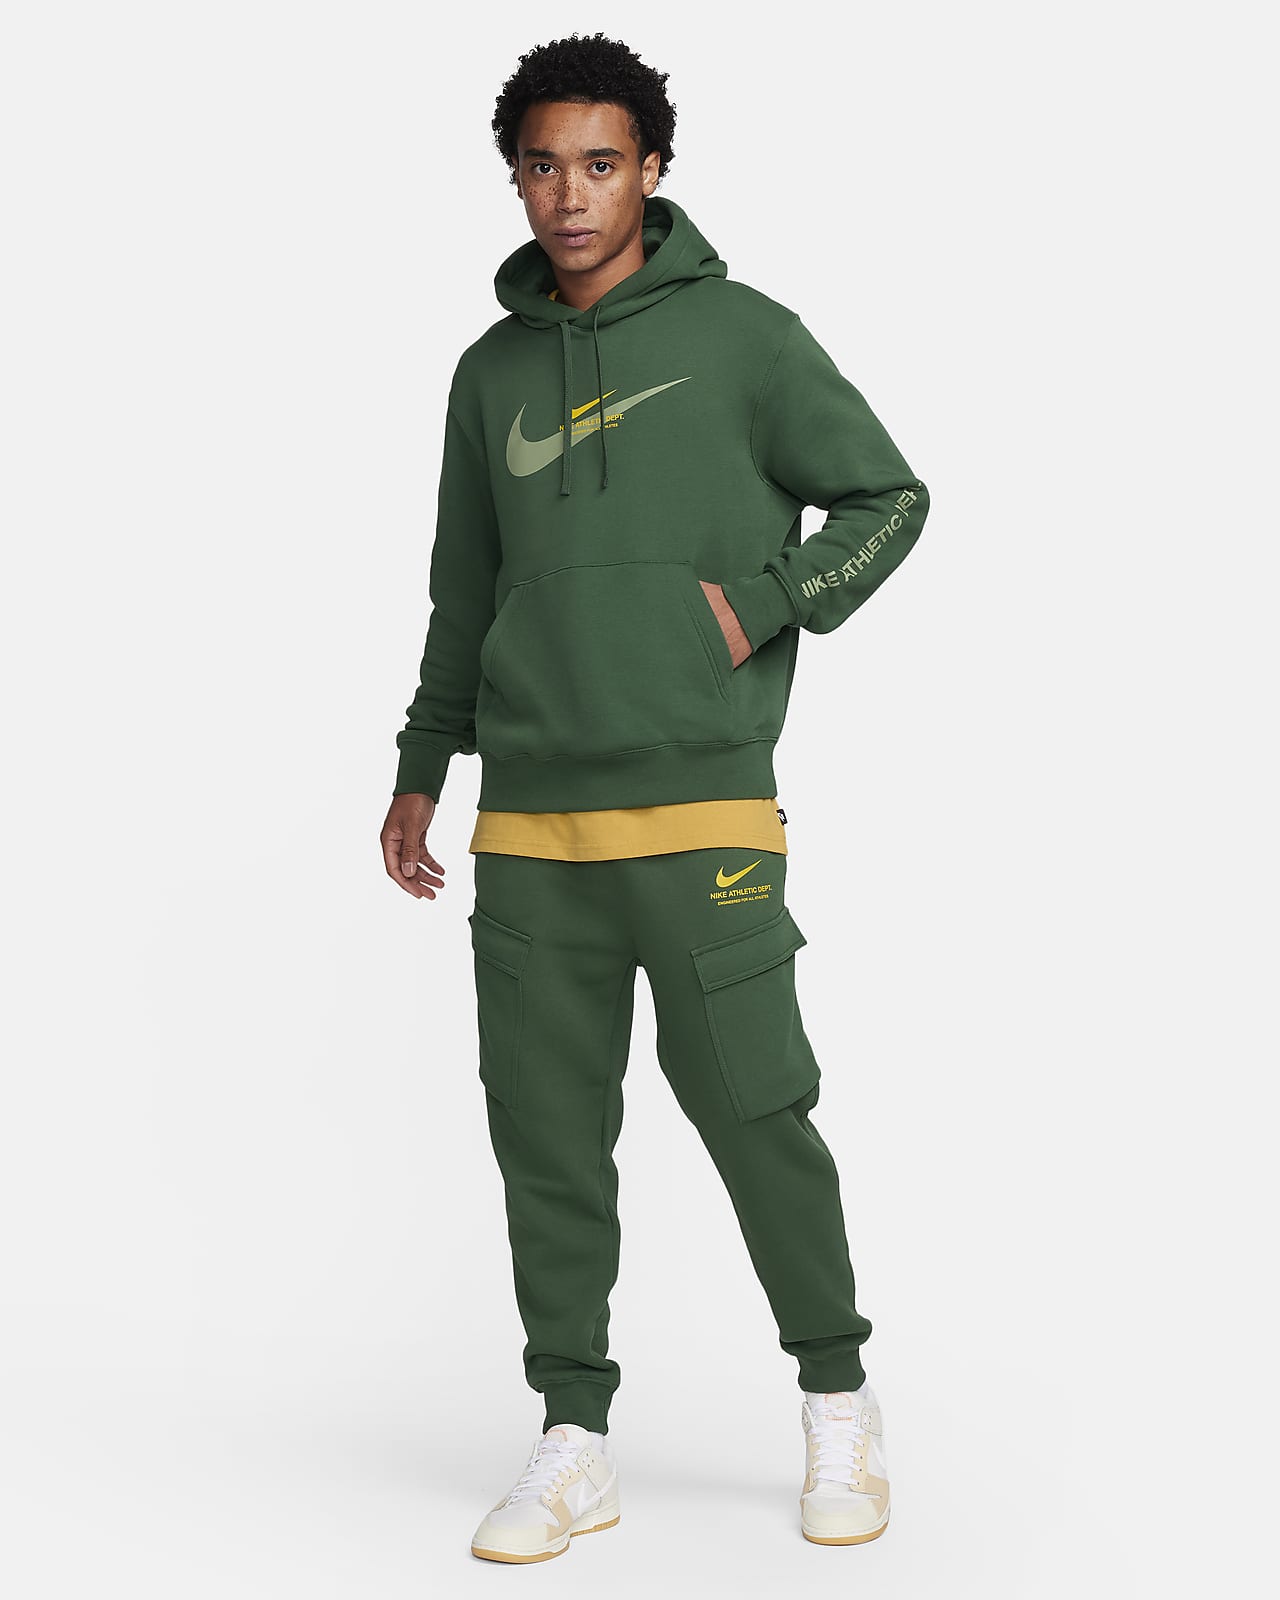 Nike Sportswear Men's Fleece Cargo Trousers. Nike LU